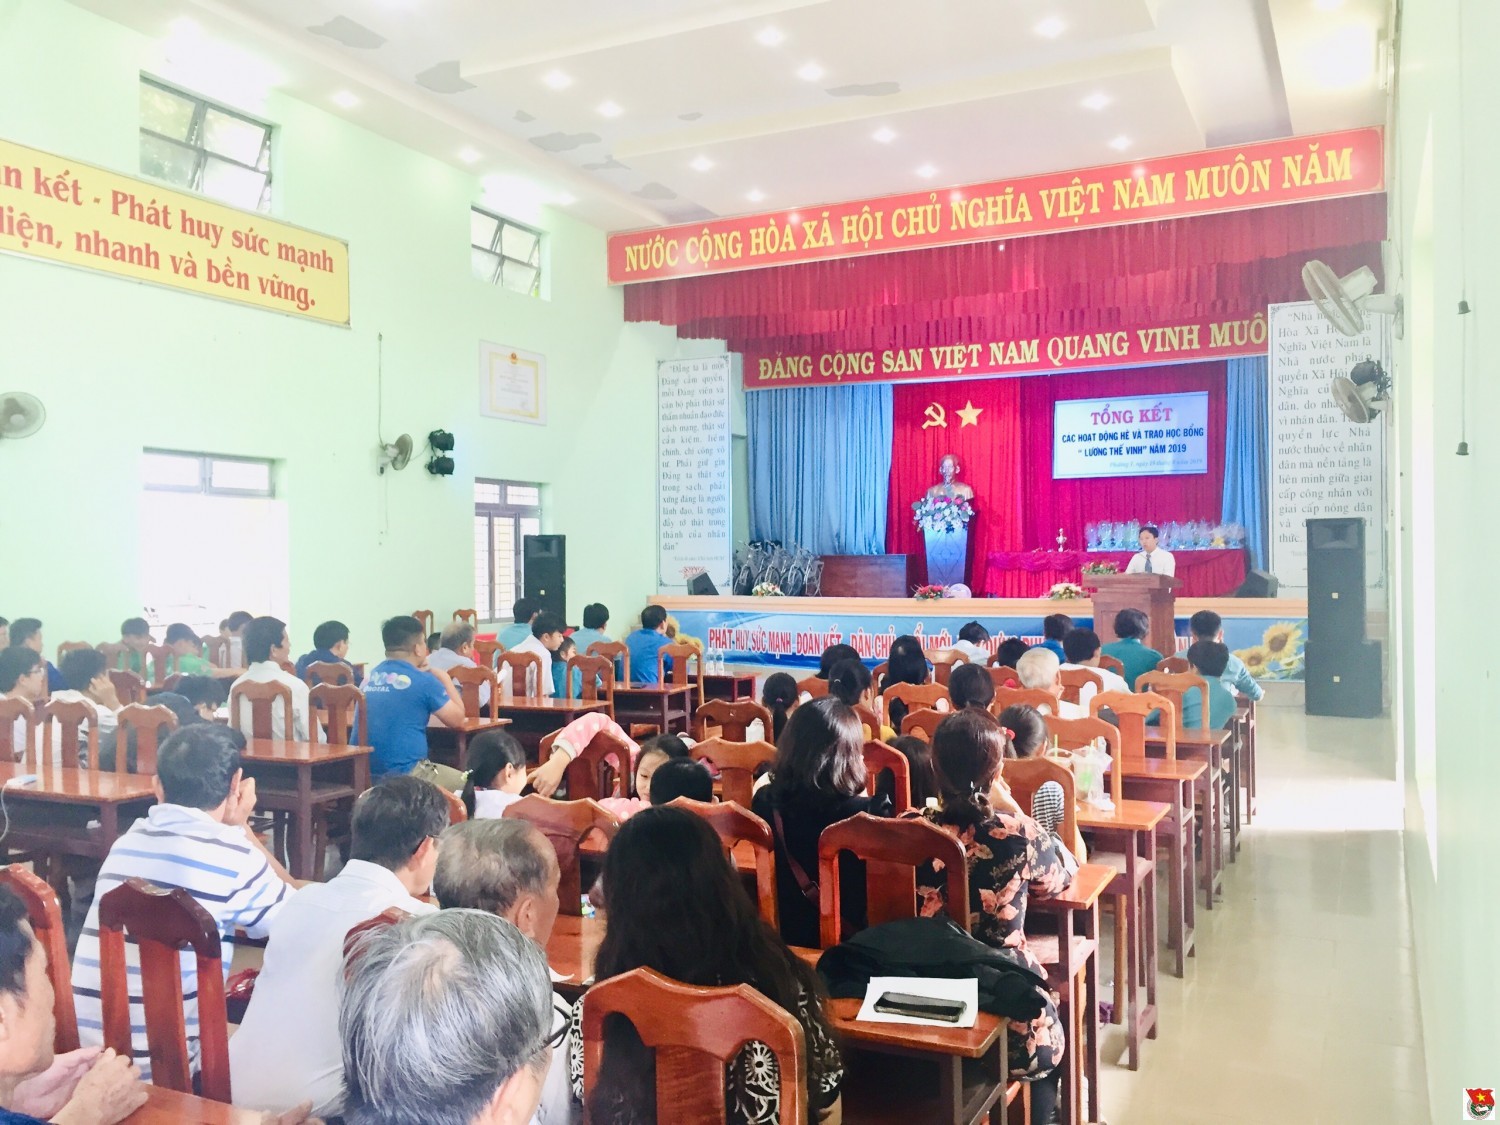 Bảo Lộc: các xã, phường tổng kết hoạt động hè năm 2019